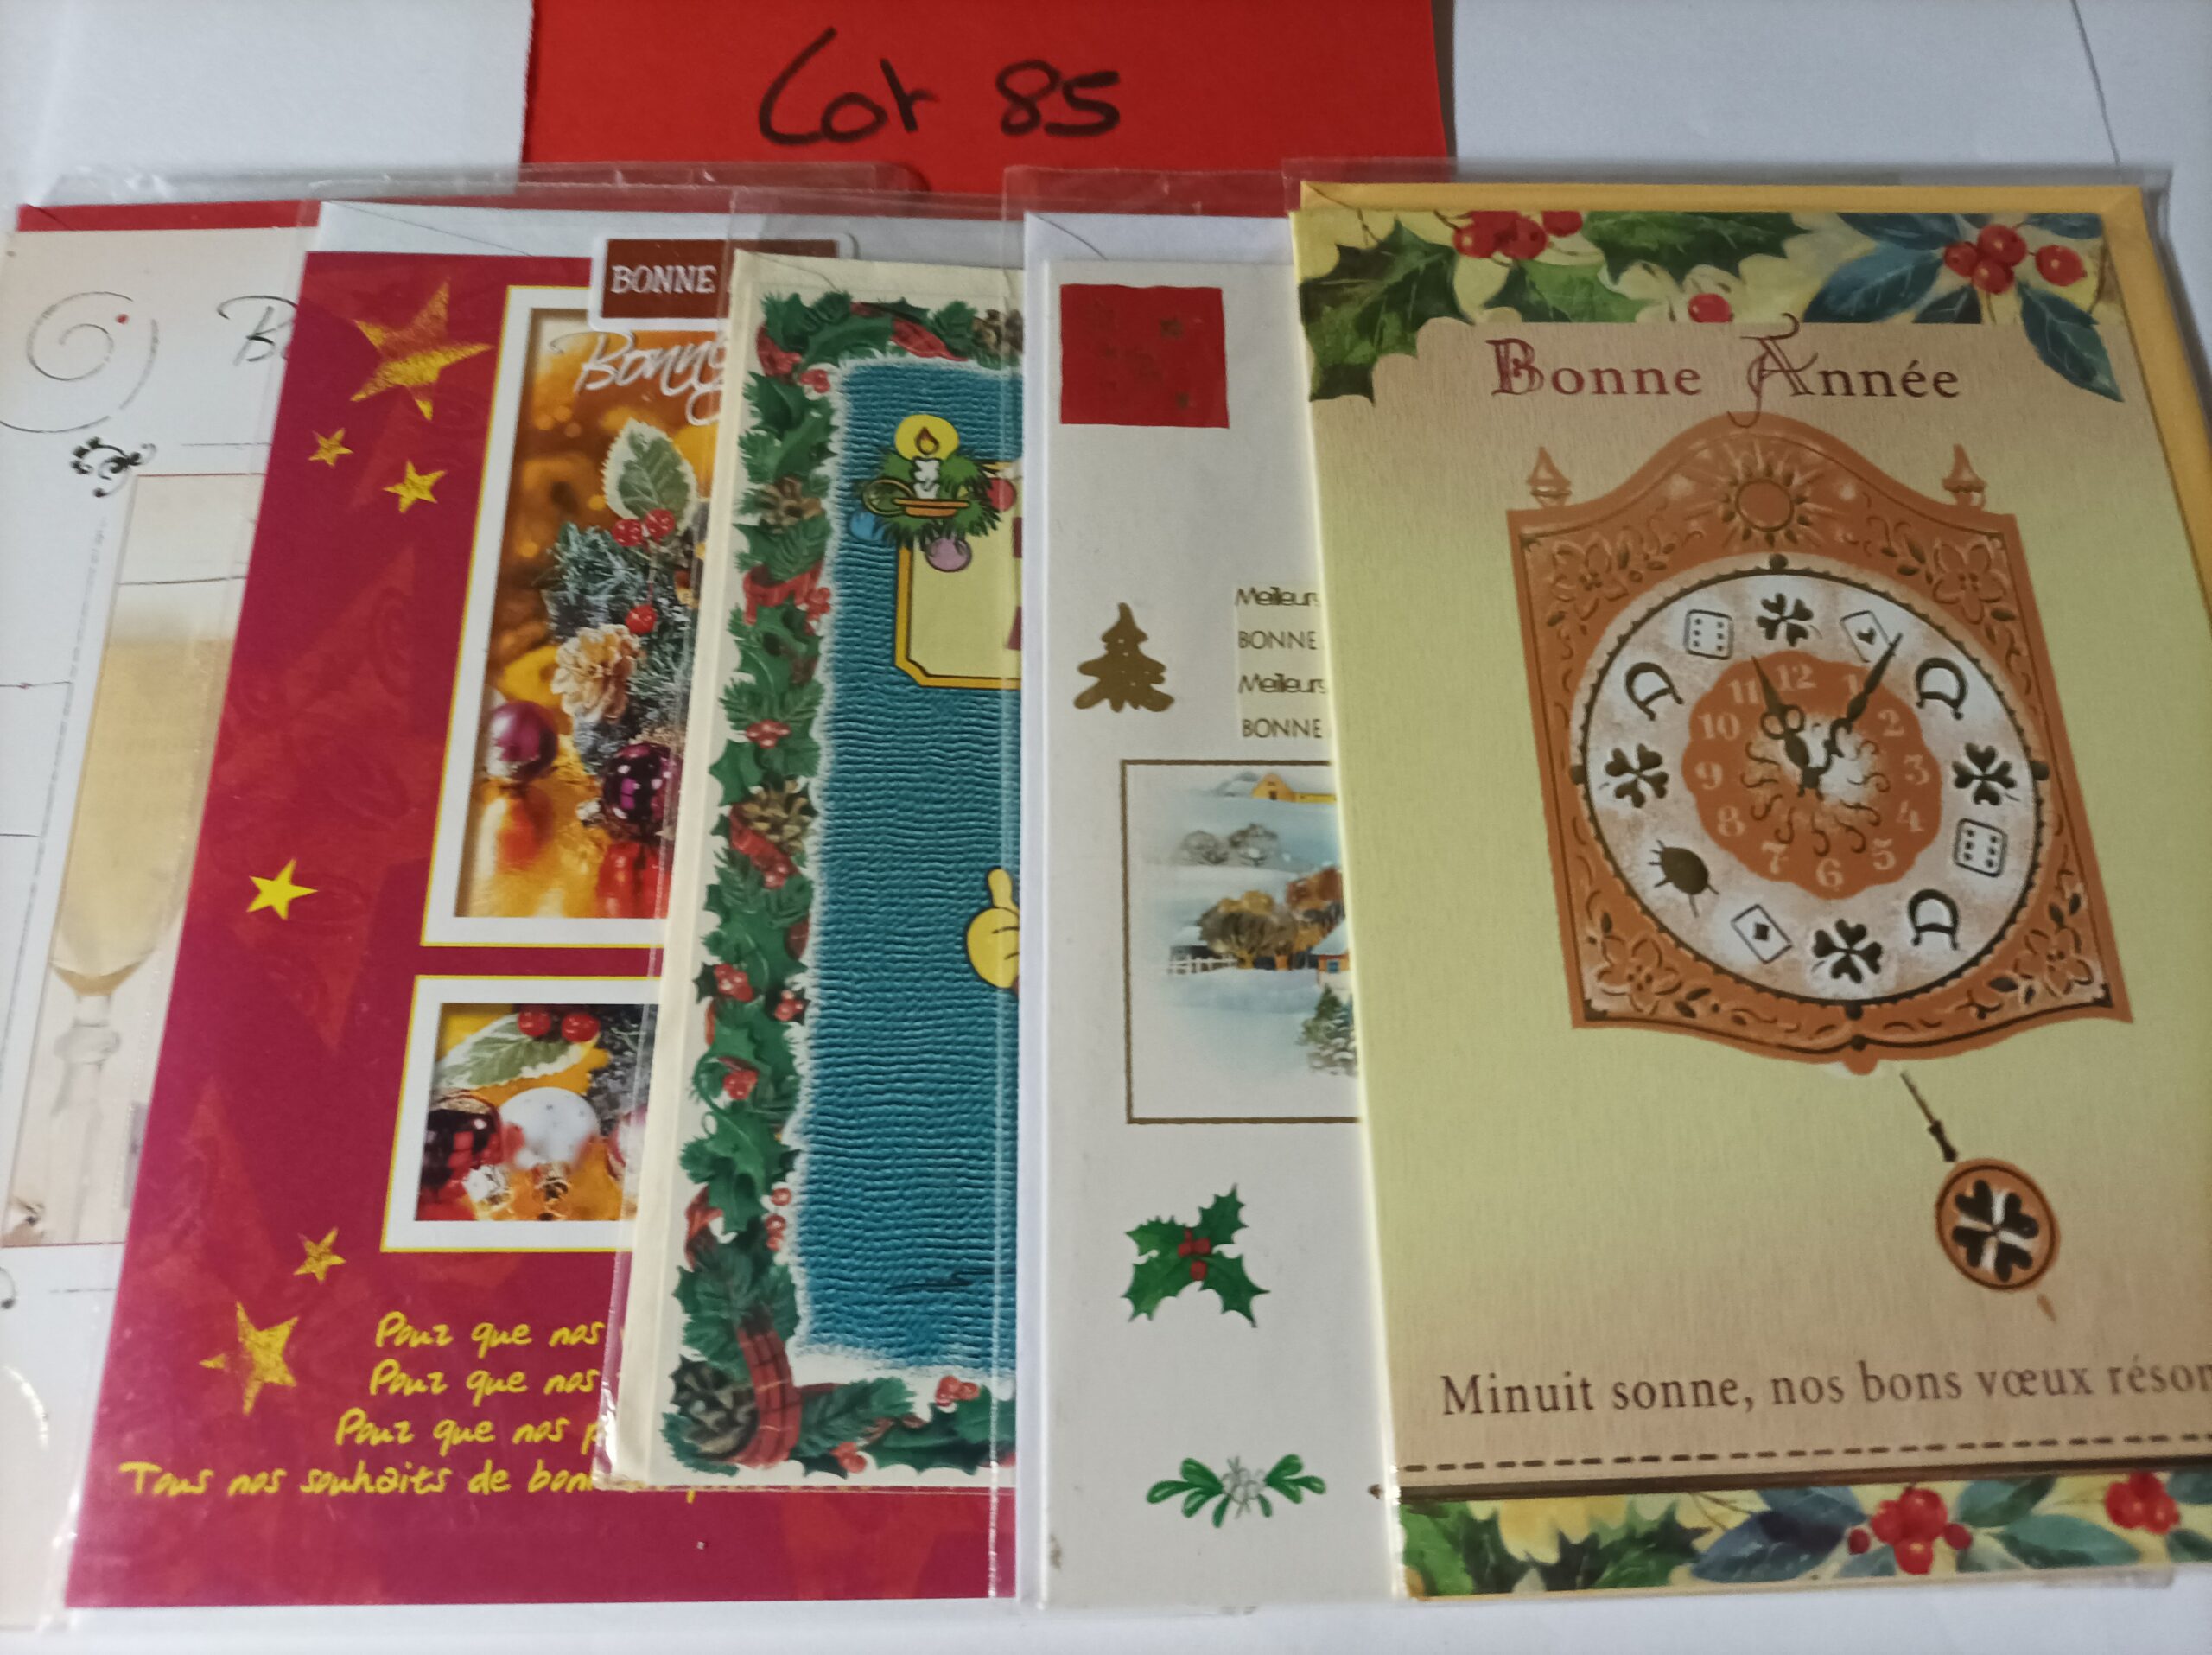 Lot de 5 cartes postales + enveloppes bonne année (lot 85)